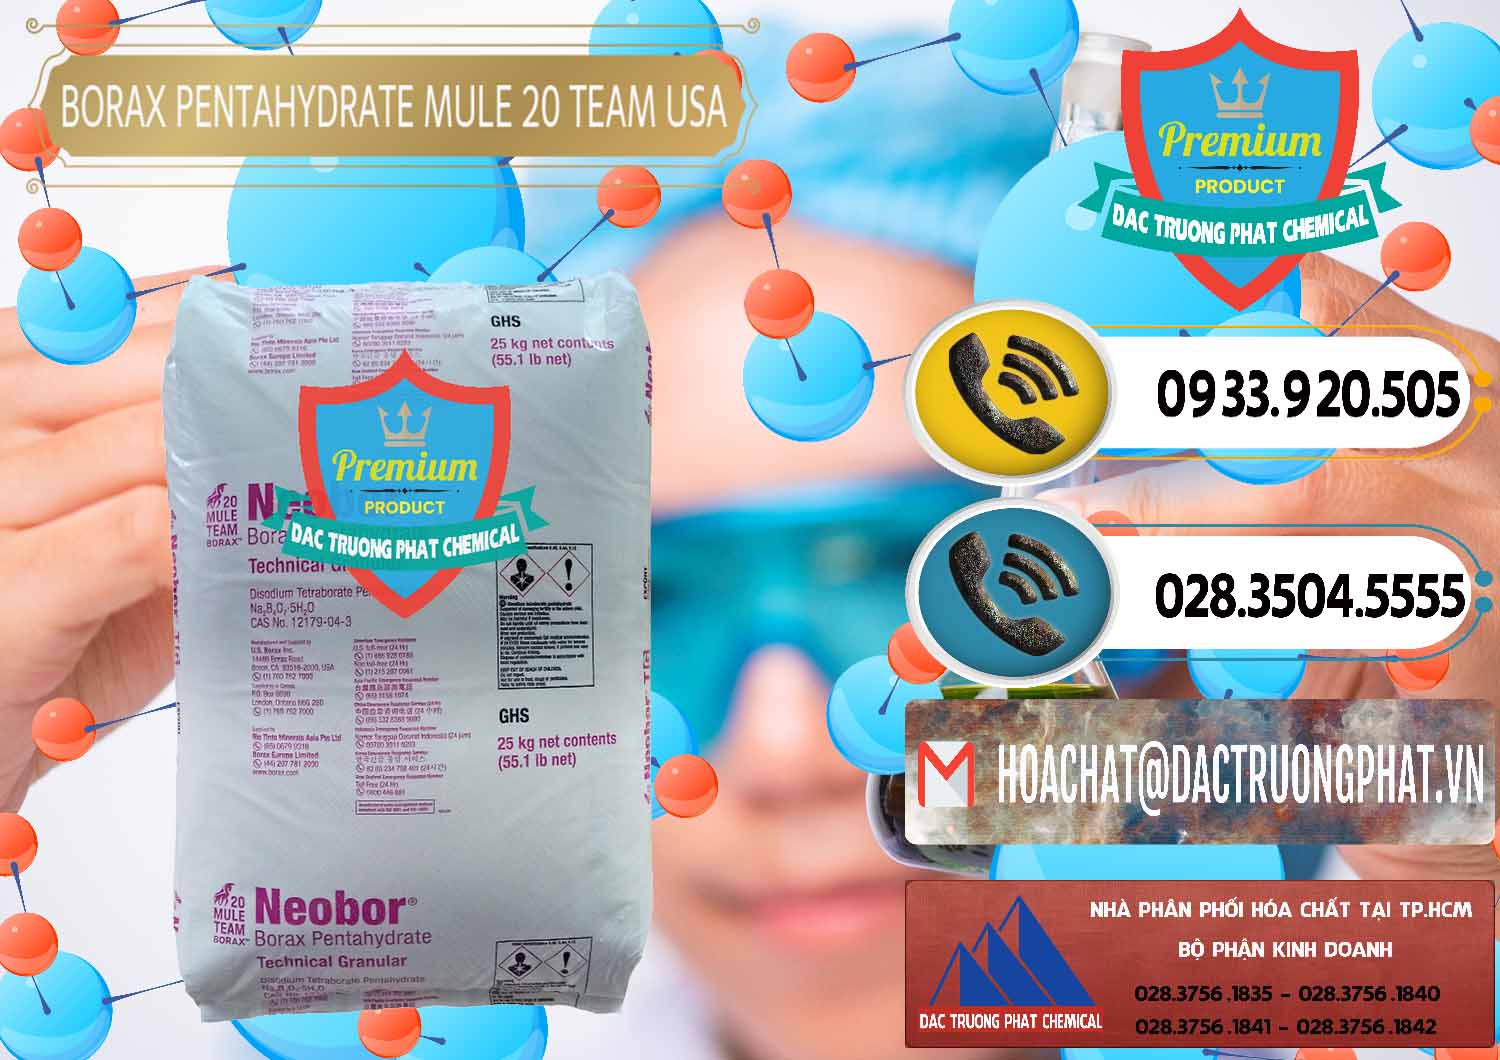 Đơn vị bán và phân phối Borax Pentahydrate - NA2B4O7.5H2O Mỹ USA - Mule 20 Team - 0034 - Nhà phân phối _ cung cấp hóa chất tại TP.HCM - hoachatdetnhuom.vn